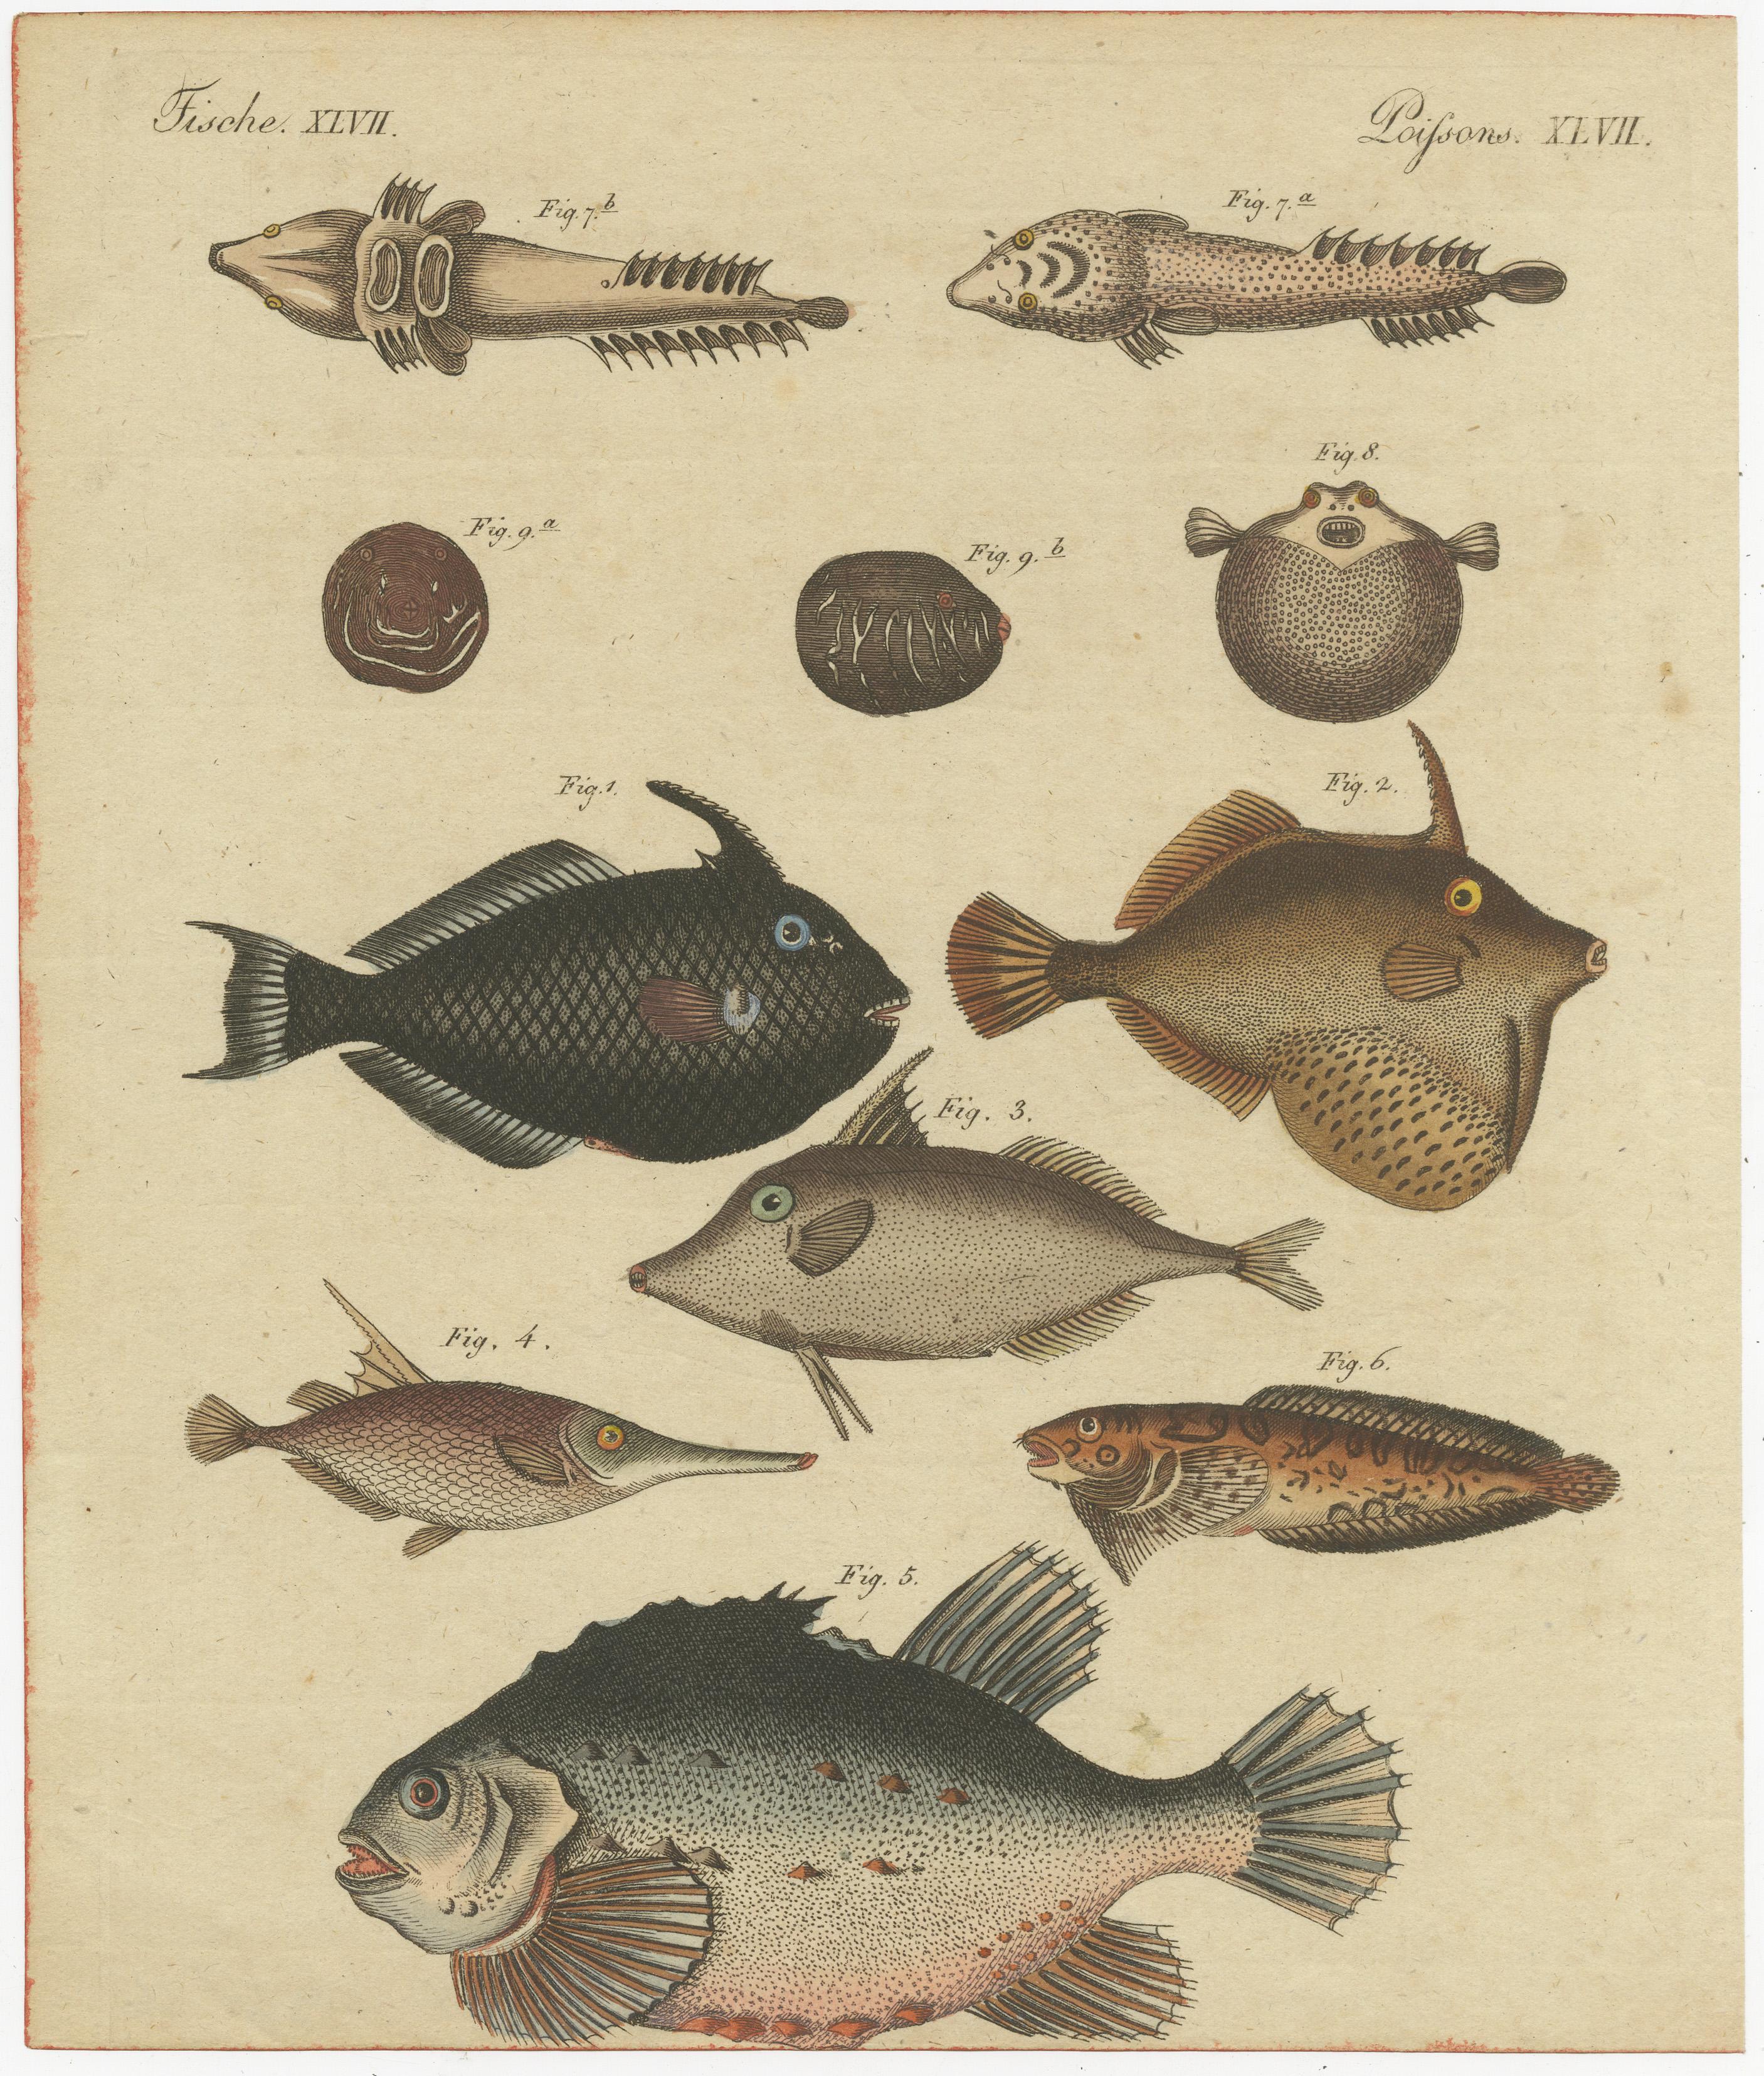 Dieser antike Originaldruck zeigt viele Fischarten, darunter den Kornettfisch, den Schwertfisch und viele andere Fischarten.

Stammt aus Bertuchs 